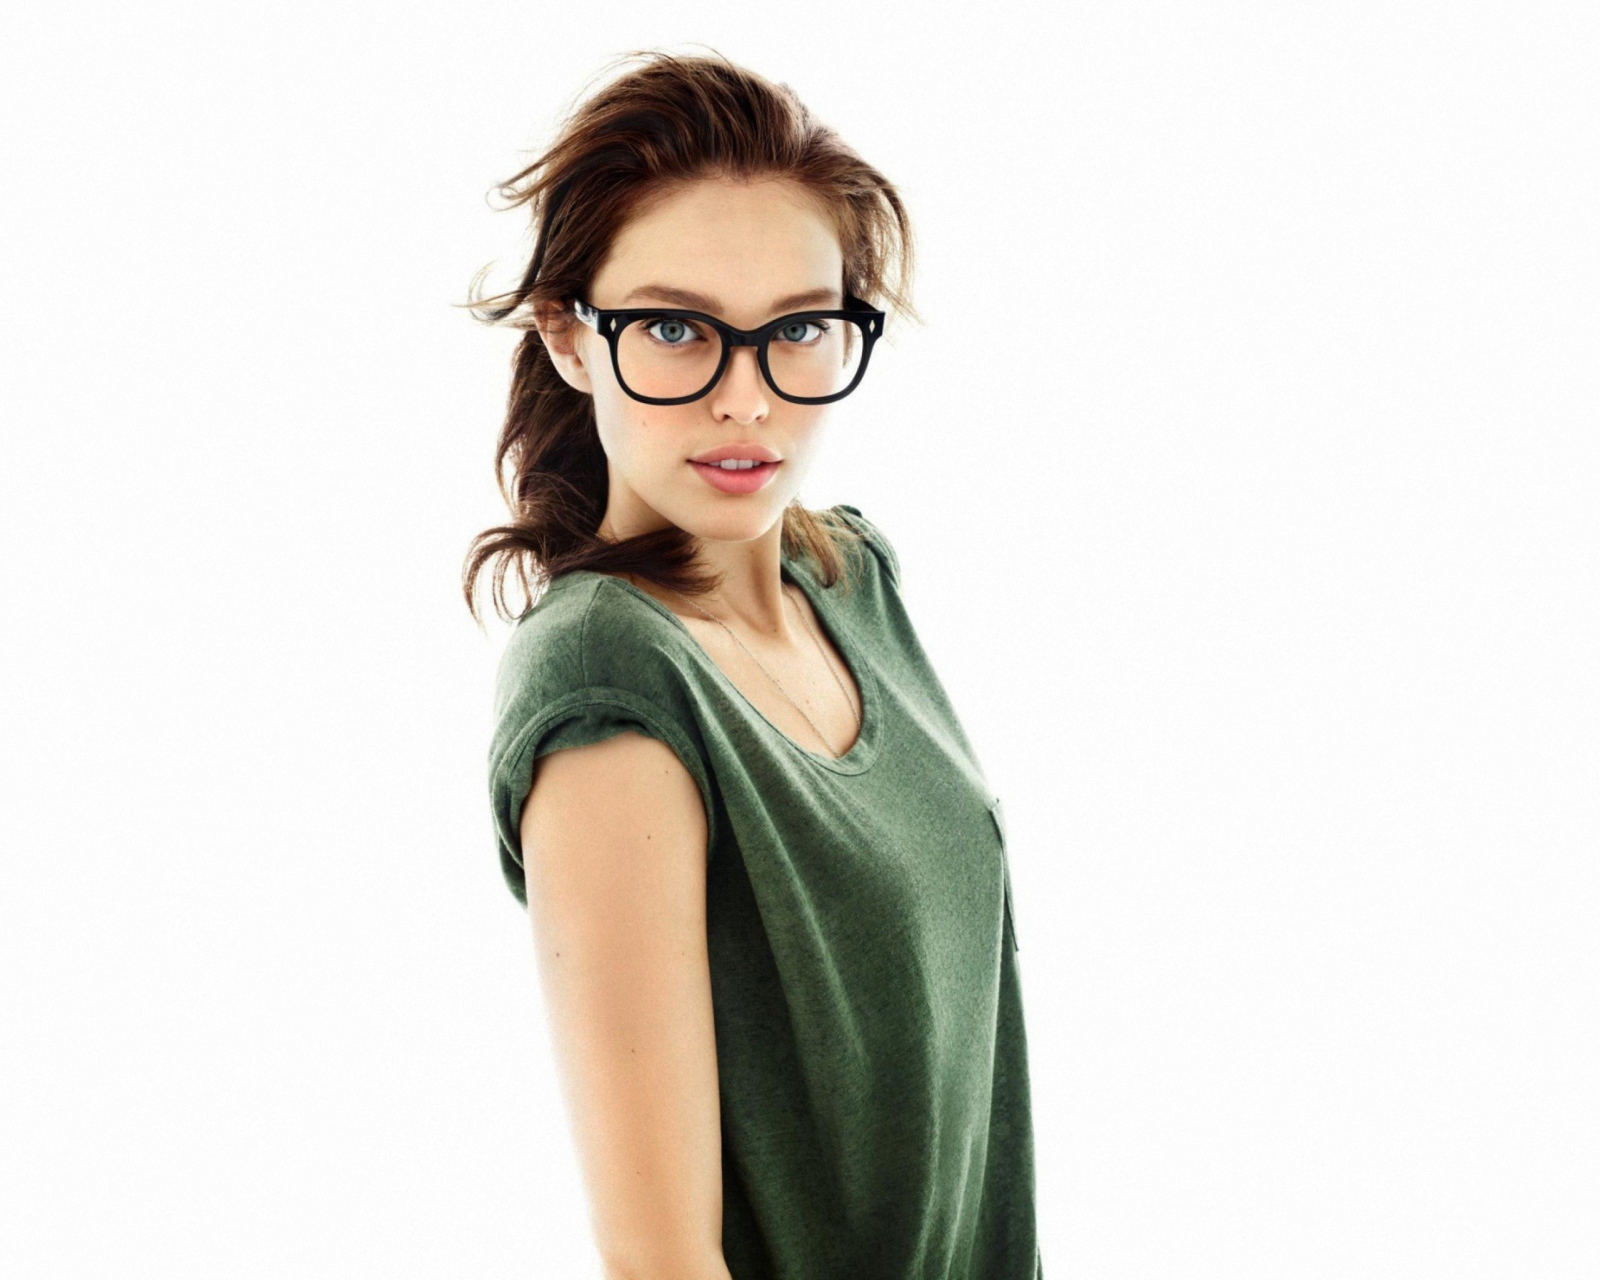 Very Cute Girl In Big Glasses screenshot #1 1600x1280